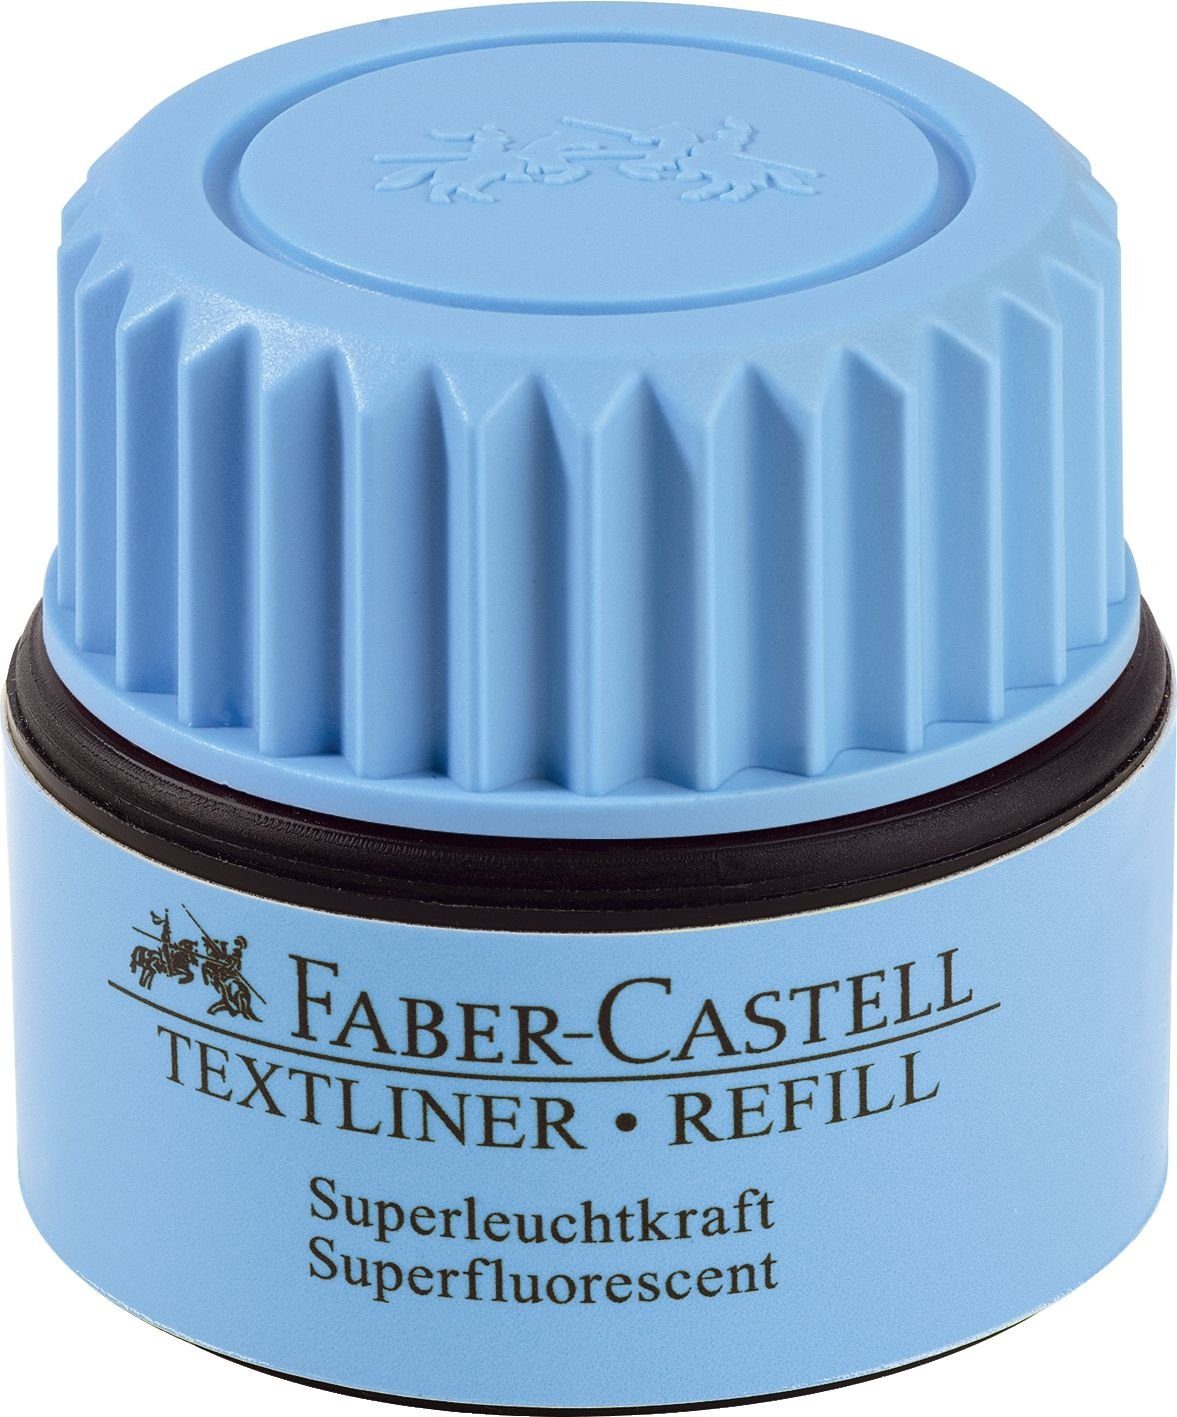 Lochstanzer TEXTLINER Faber-Castell Nachfüll-Station leuchtblau FABER-CASTELL 1549,